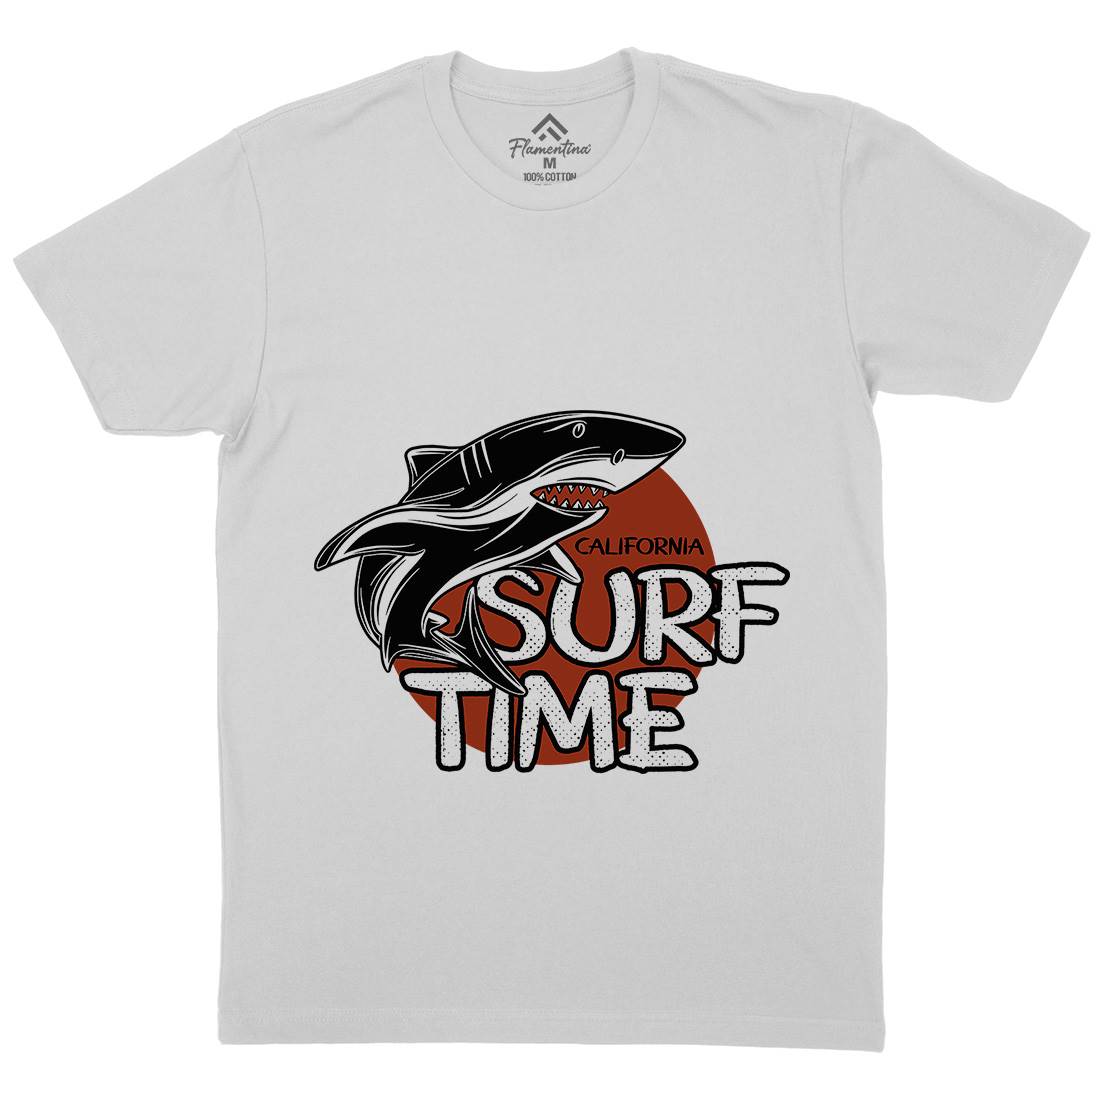 Shark Time Mens Crew Neck T-Shirt Navy D969